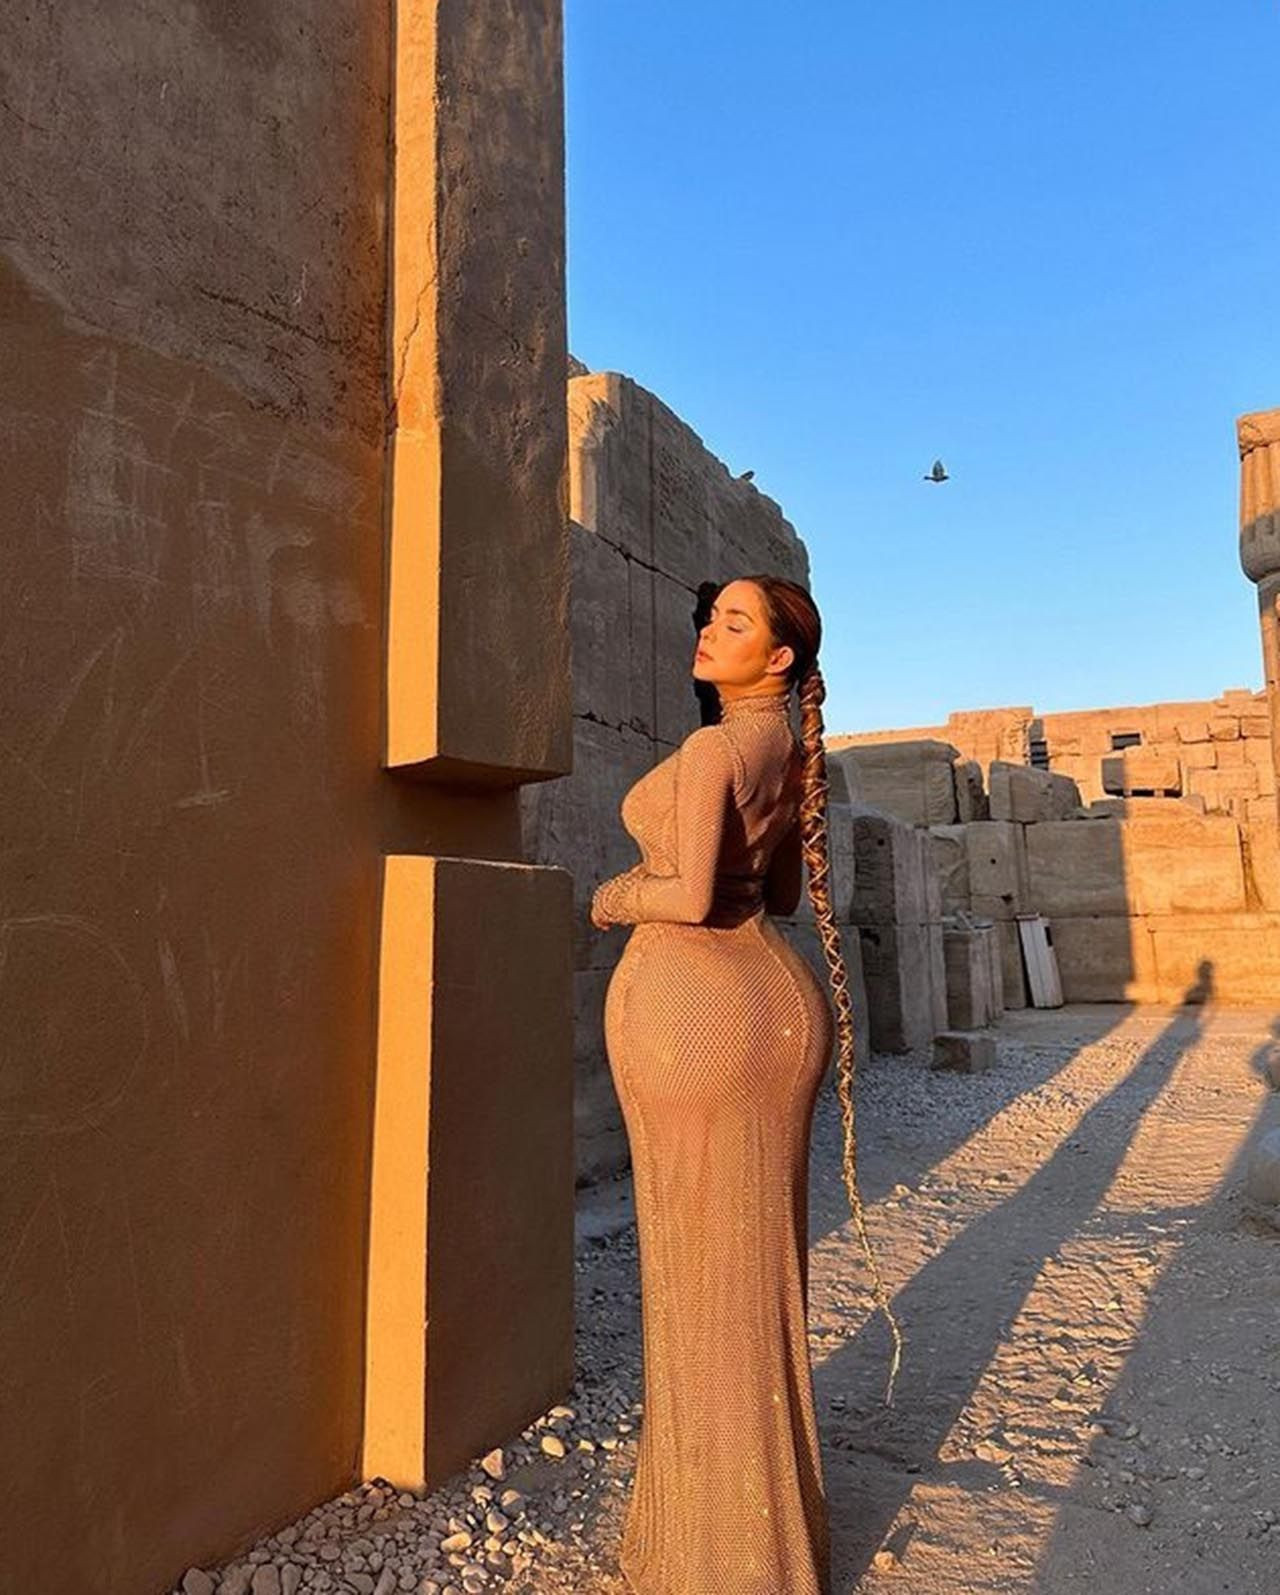 Ünlü model Demi Rose'un cesur pozları Mısır'ı ayağa kaldırdı - Resim: 3